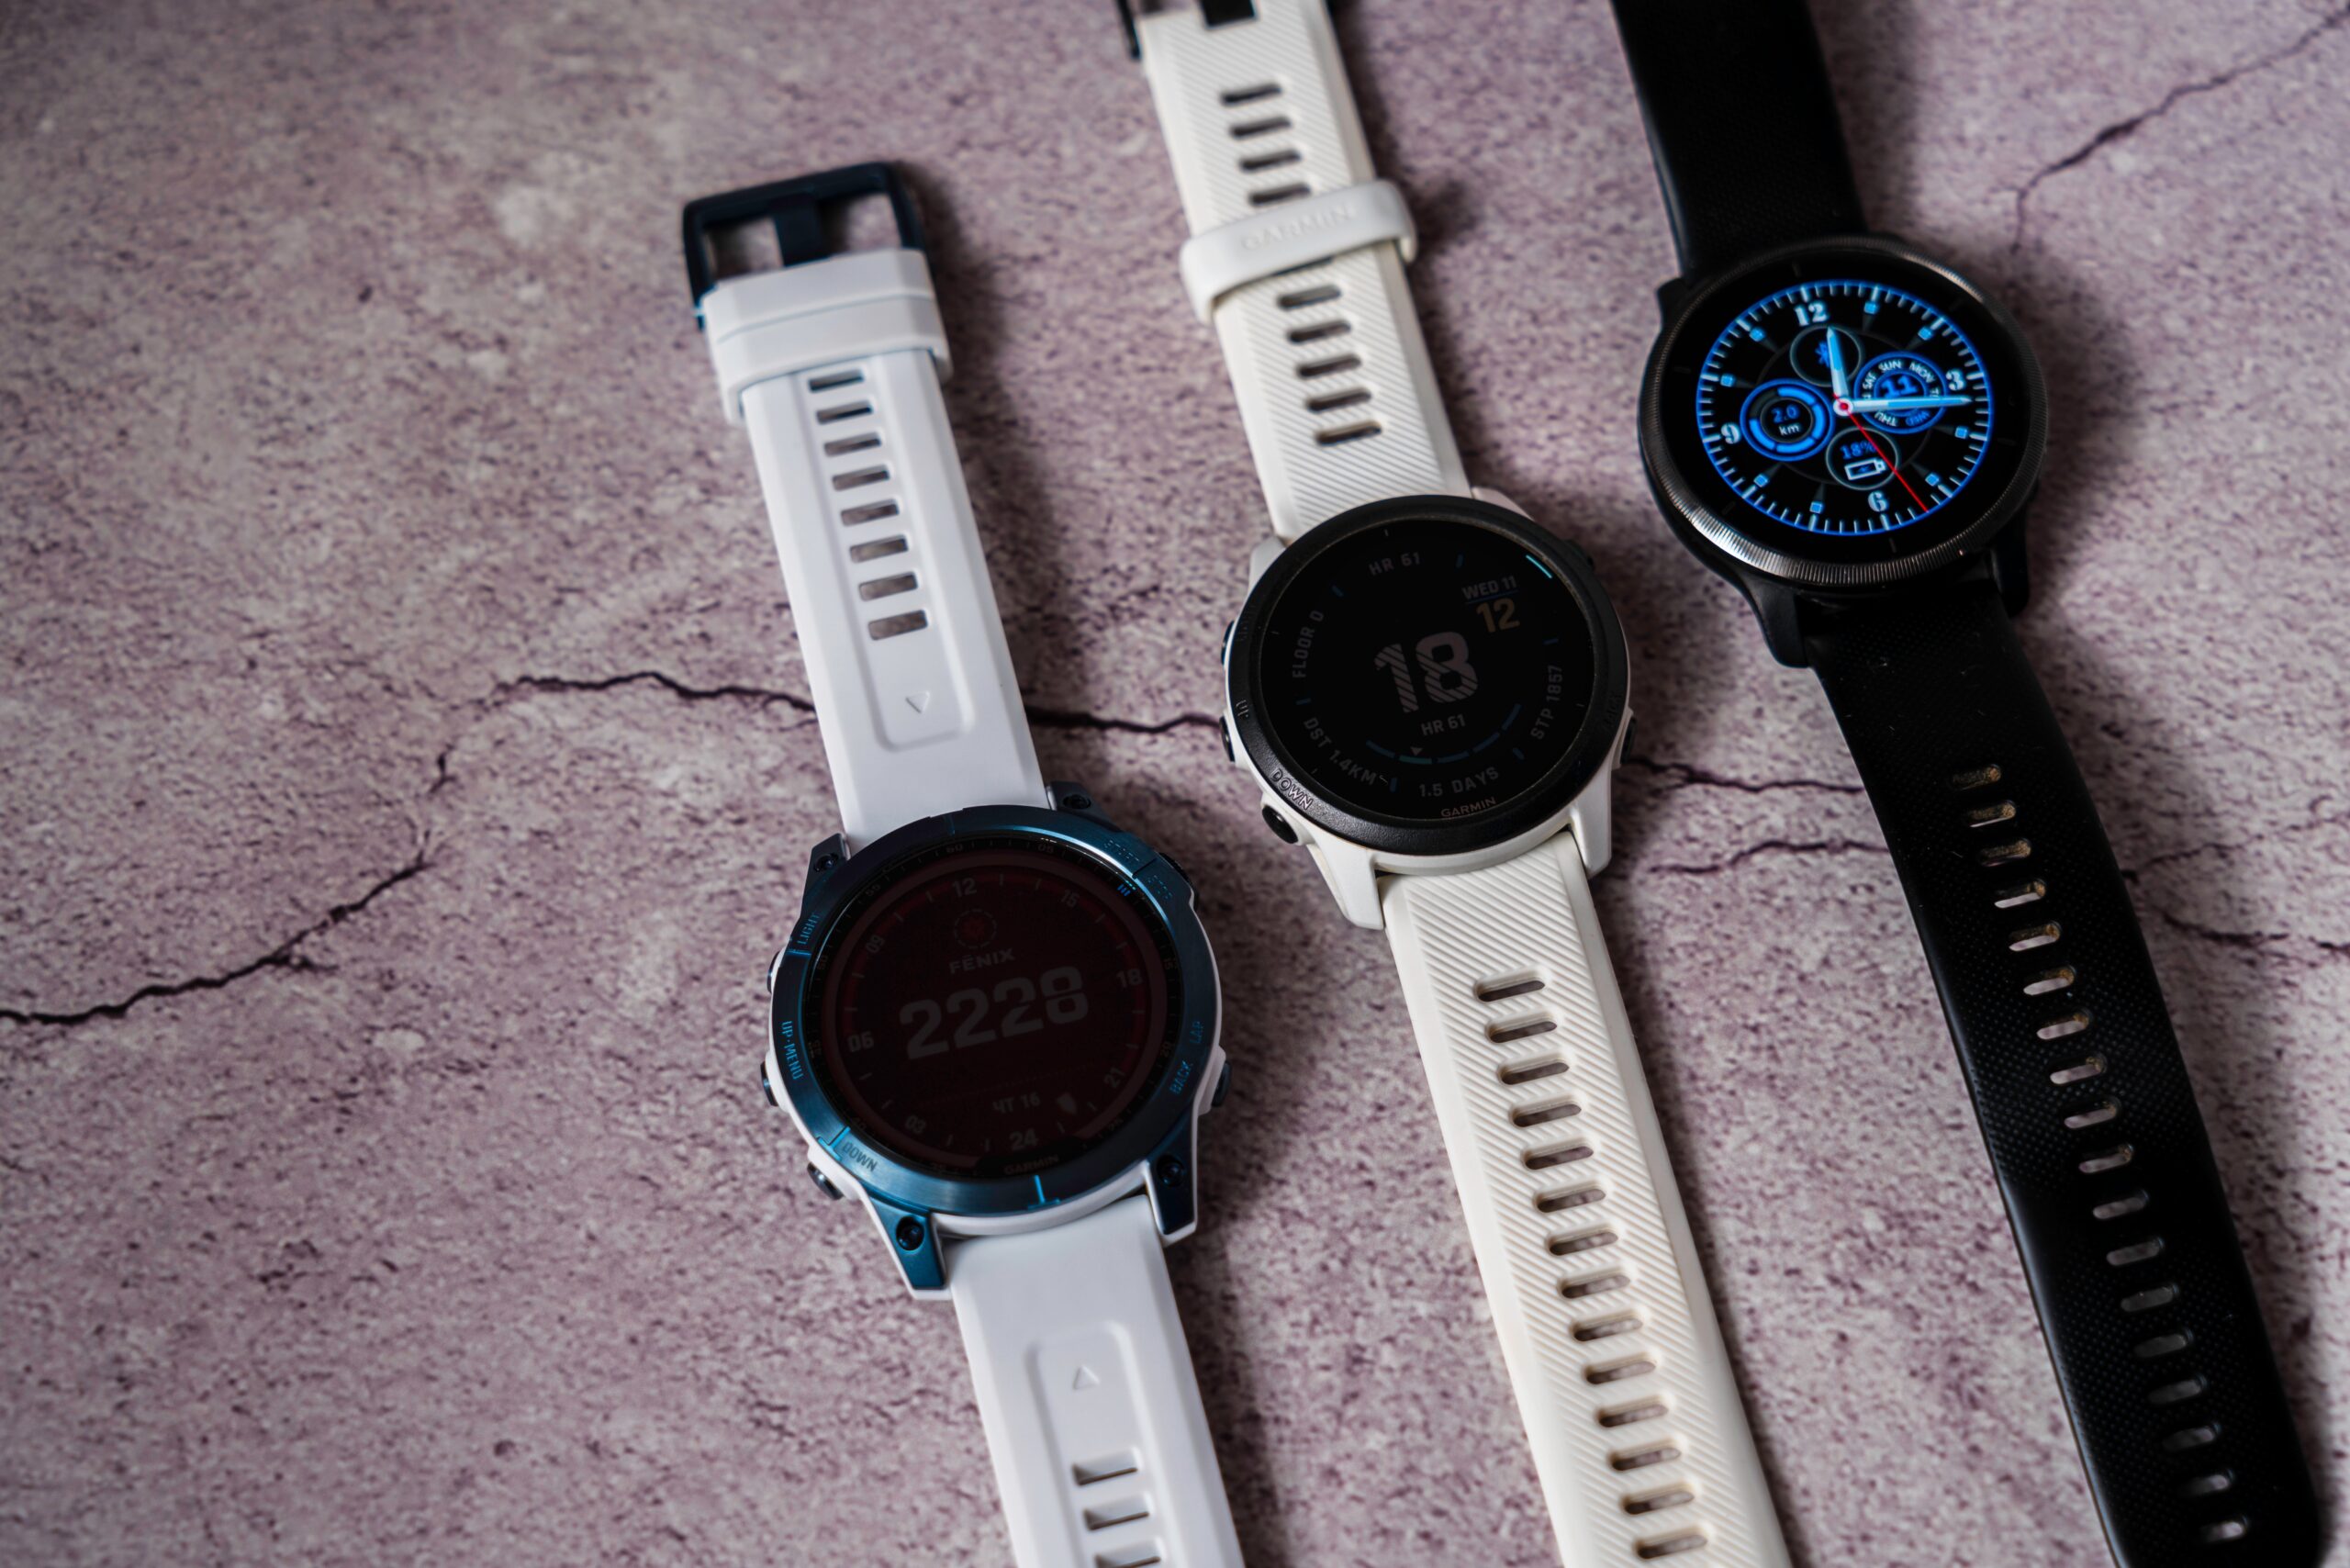 Trzy różne smartwatche na podłożu z betonu, dwa z białymi paskami i jeden z czarnym paskiem.